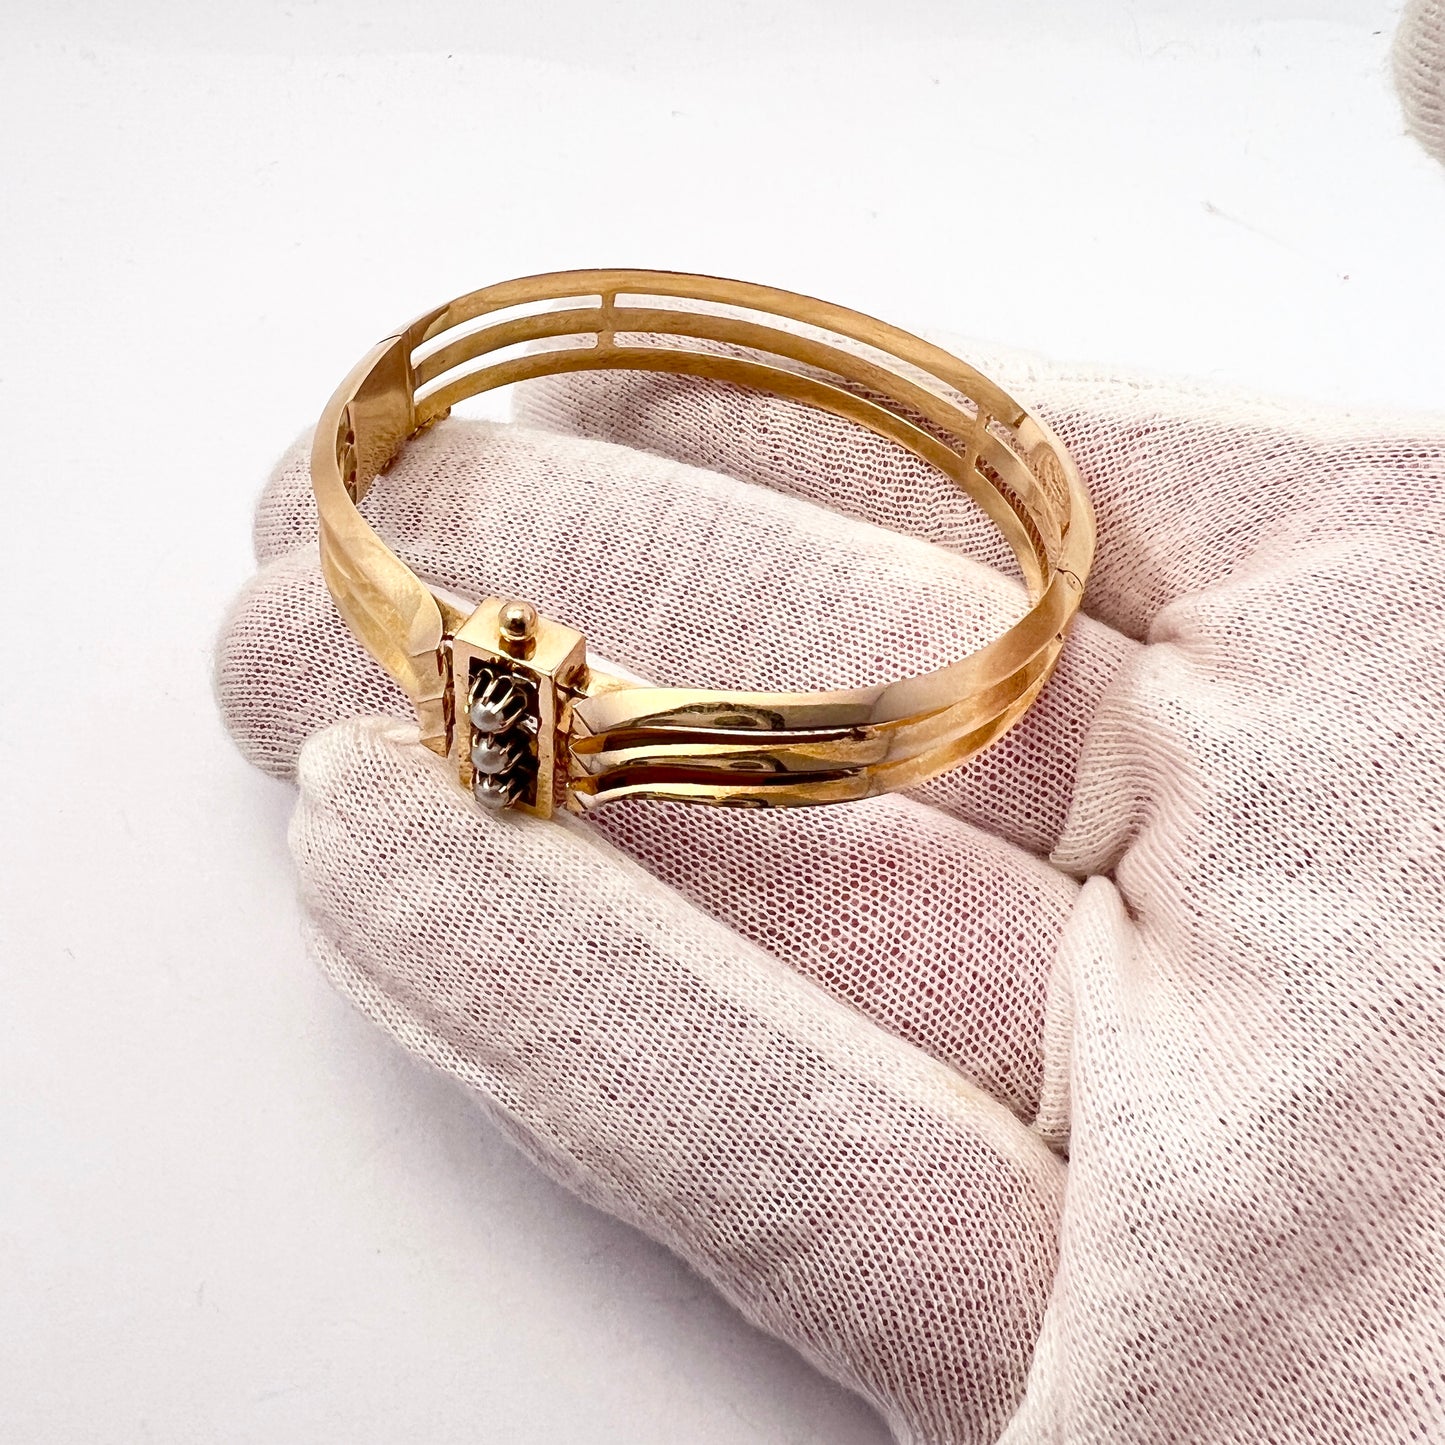 L Larsson, Sweden 1888. Antique Victorian 18k Gold Pearl Hinged Bangle Bracelet. 19.5gram